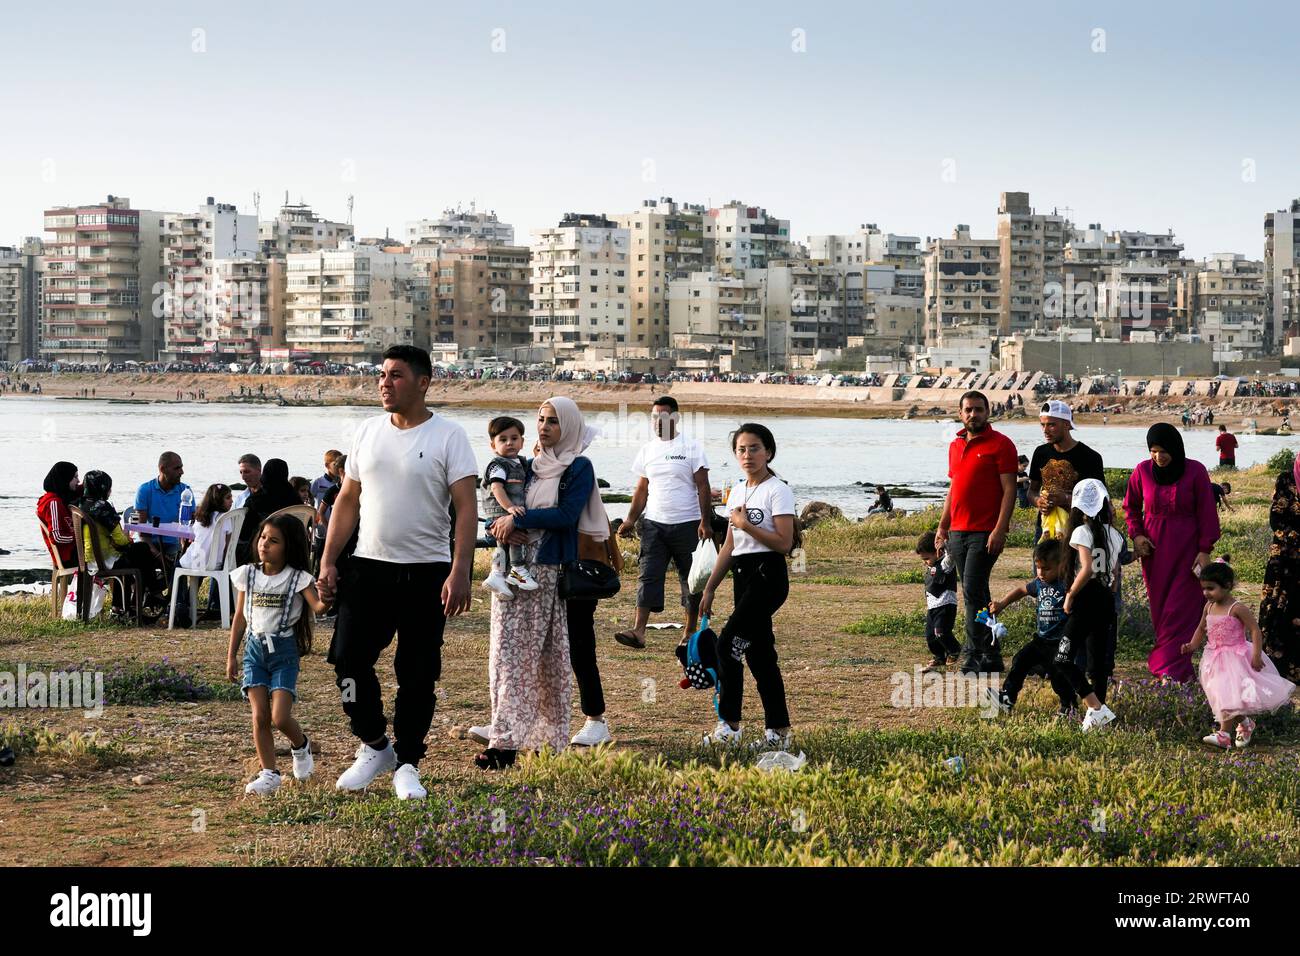 Zum Fest des Fastenbrechens (Eid Mubarak) am Ende des Ramadan feiern die Menschen an der Strandpromenade  Corniche am Strand. Tripoli, Libanon Stock Photo